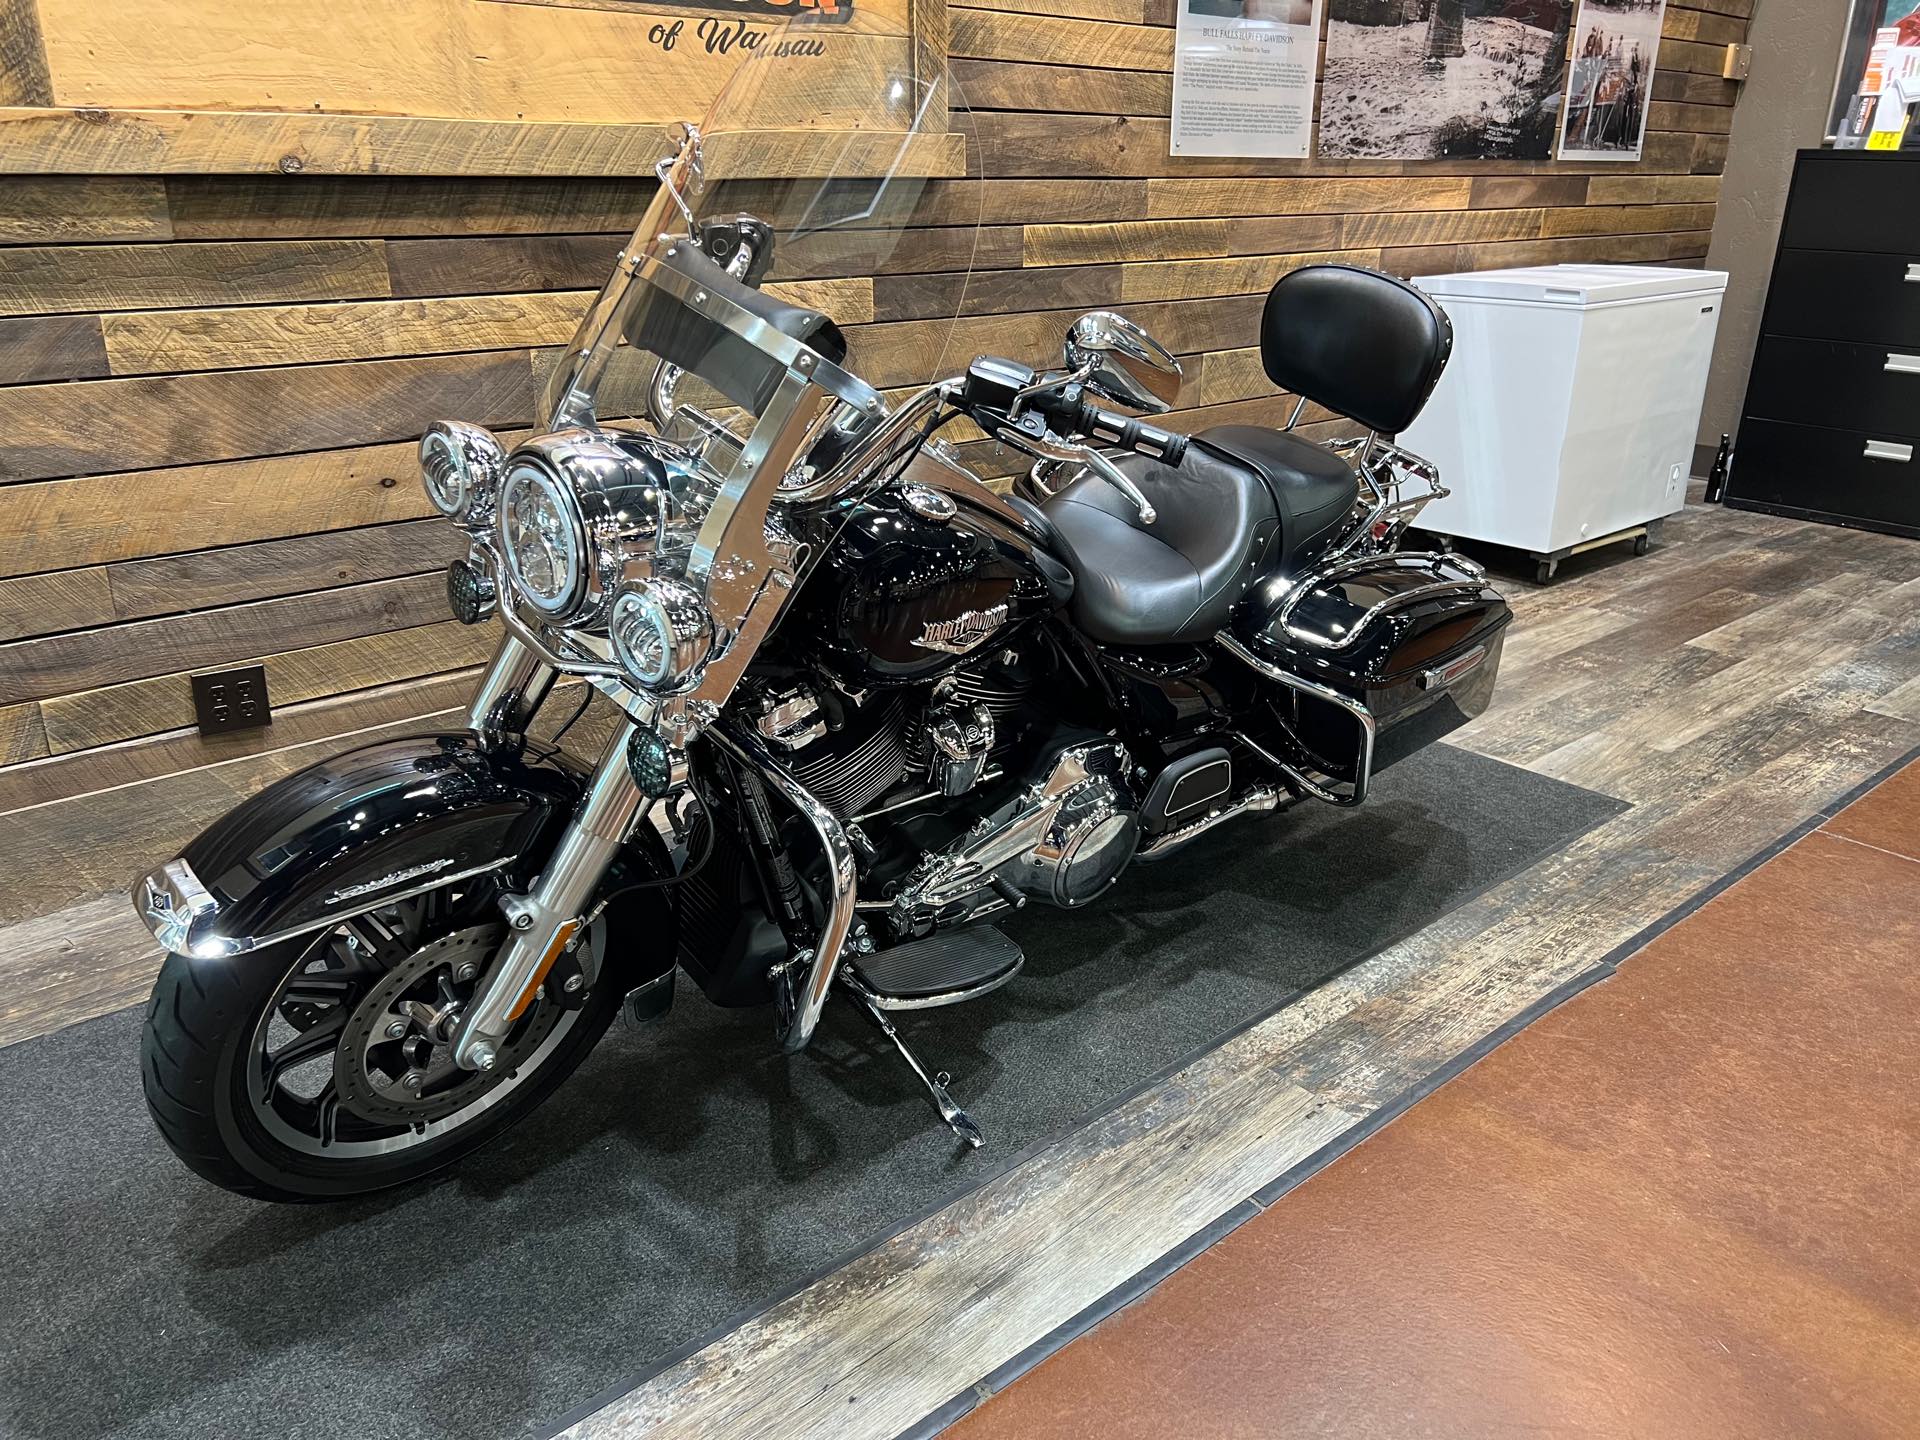 2019 Harley-Davidson Road King Base at Bull Falls Harley-Davidson